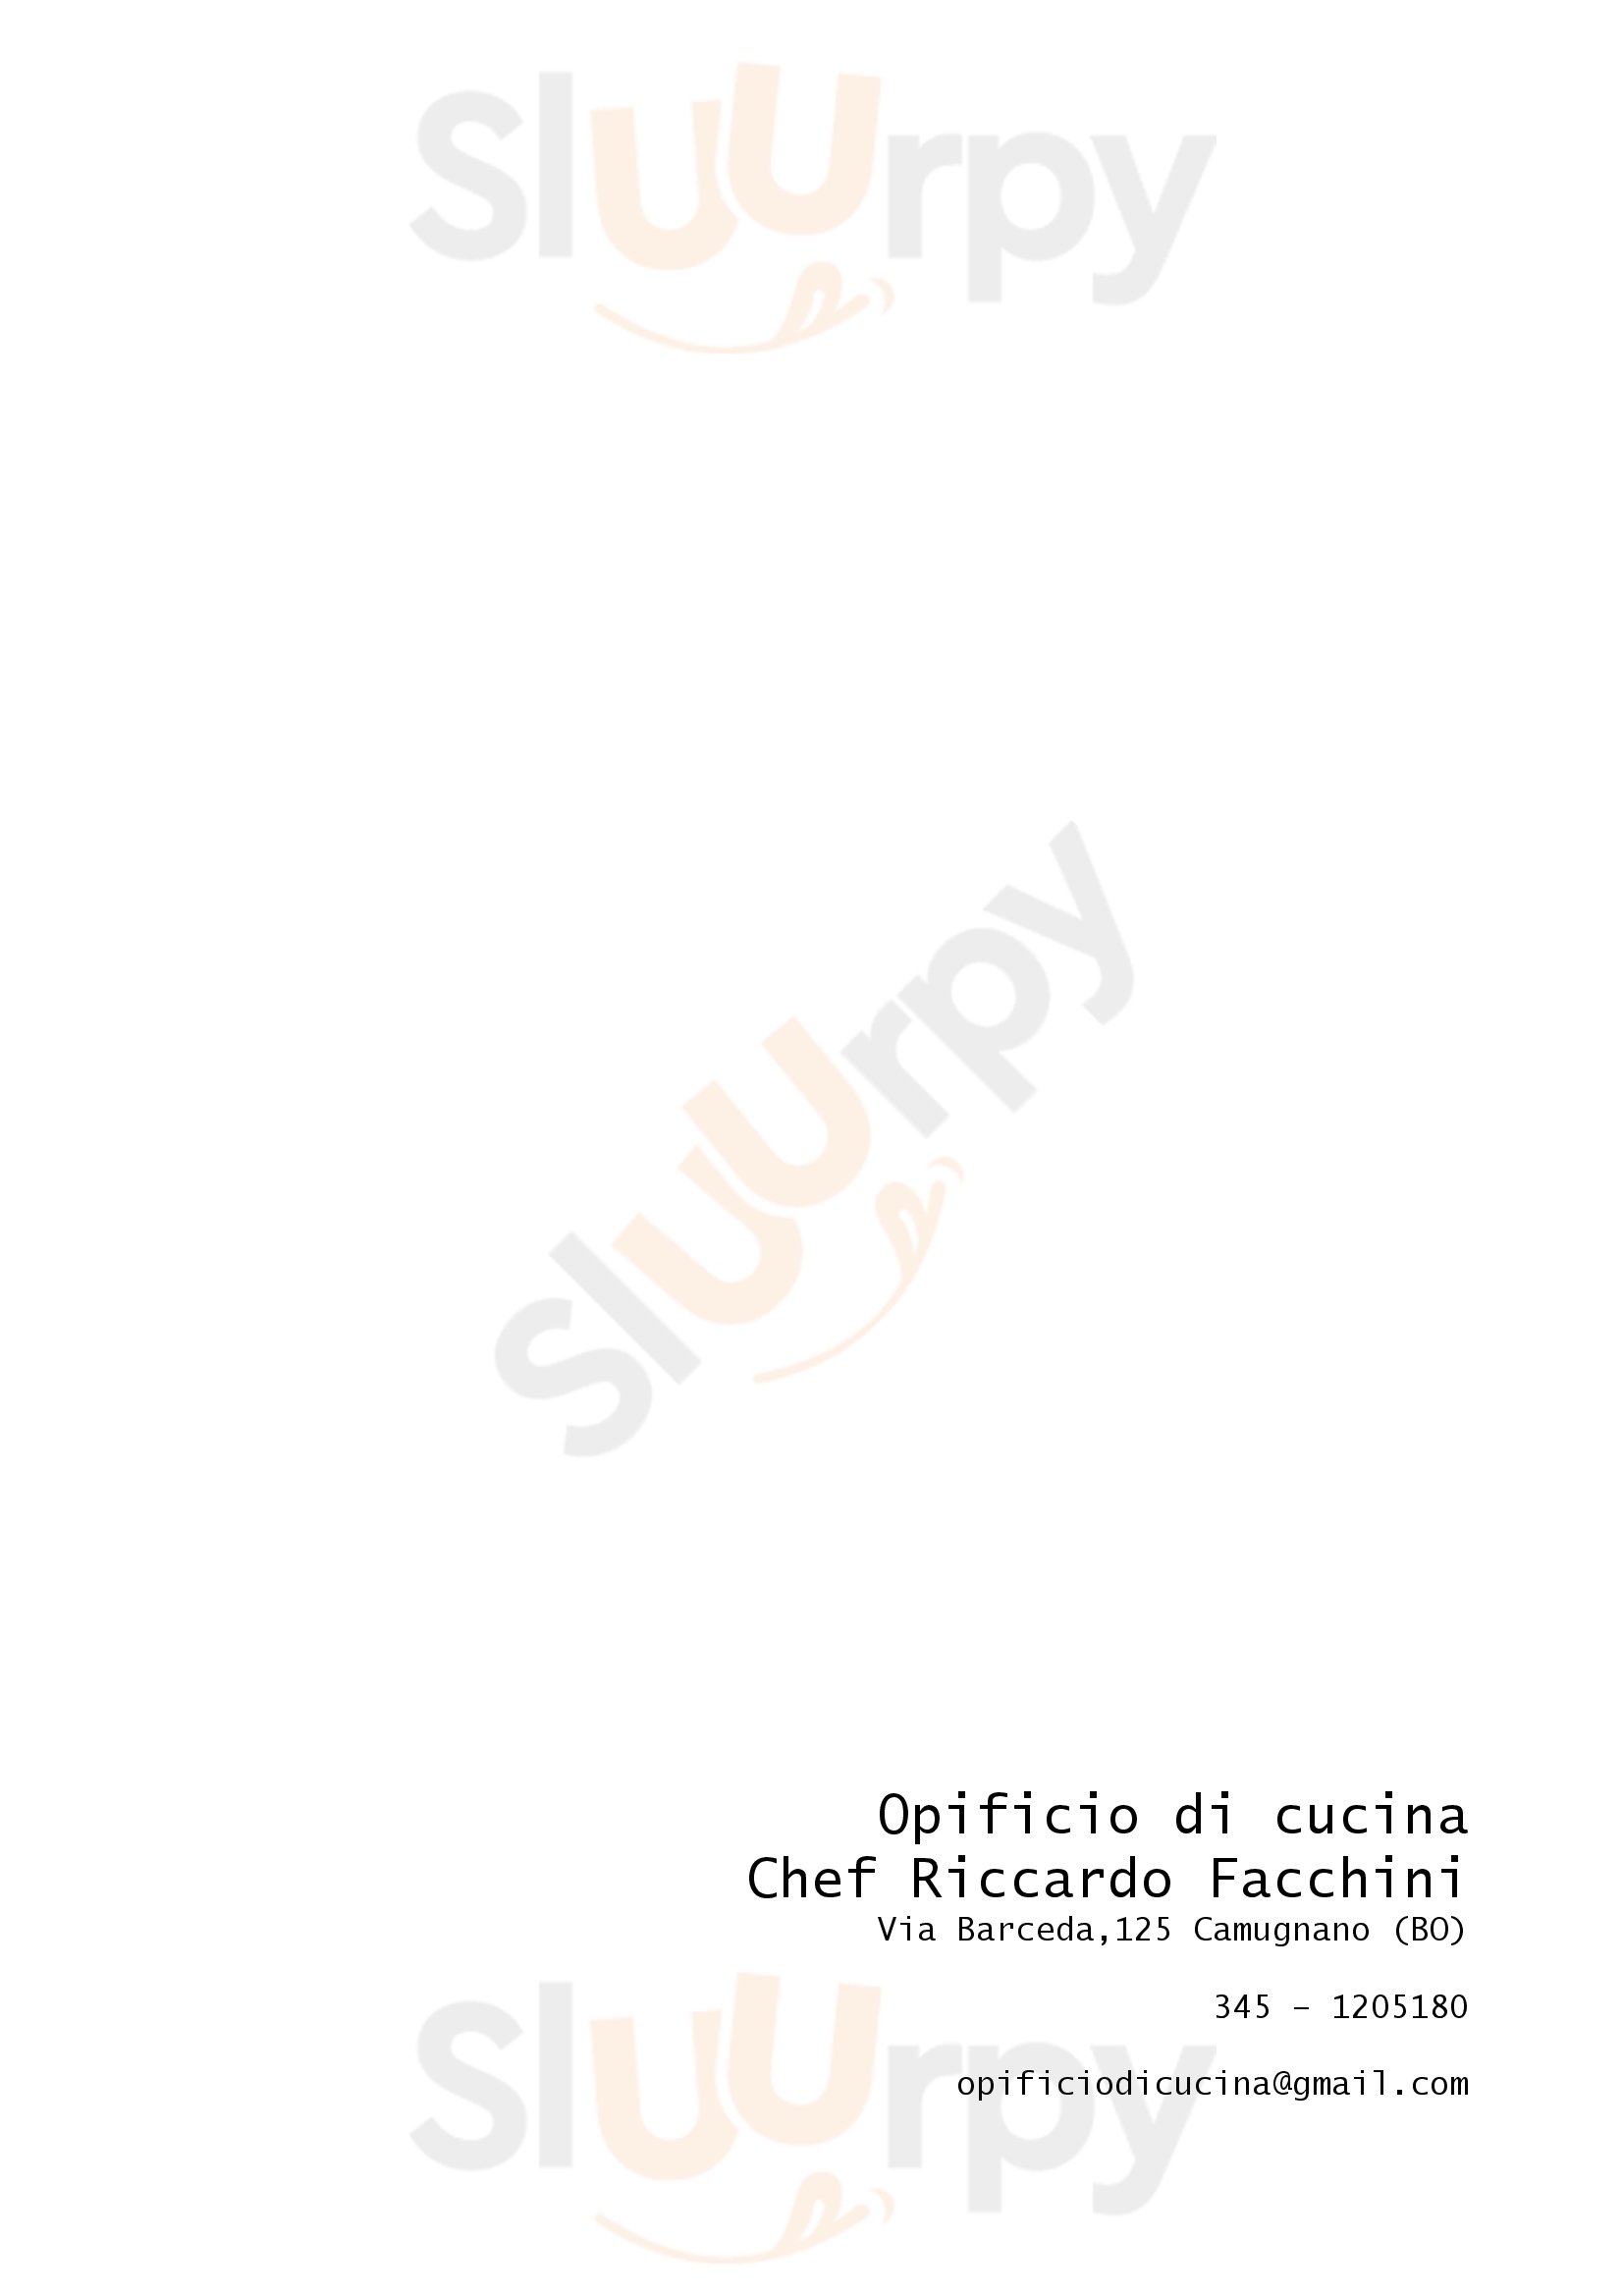 Opificio di cucina Facchini Camugnano menù 1 pagina